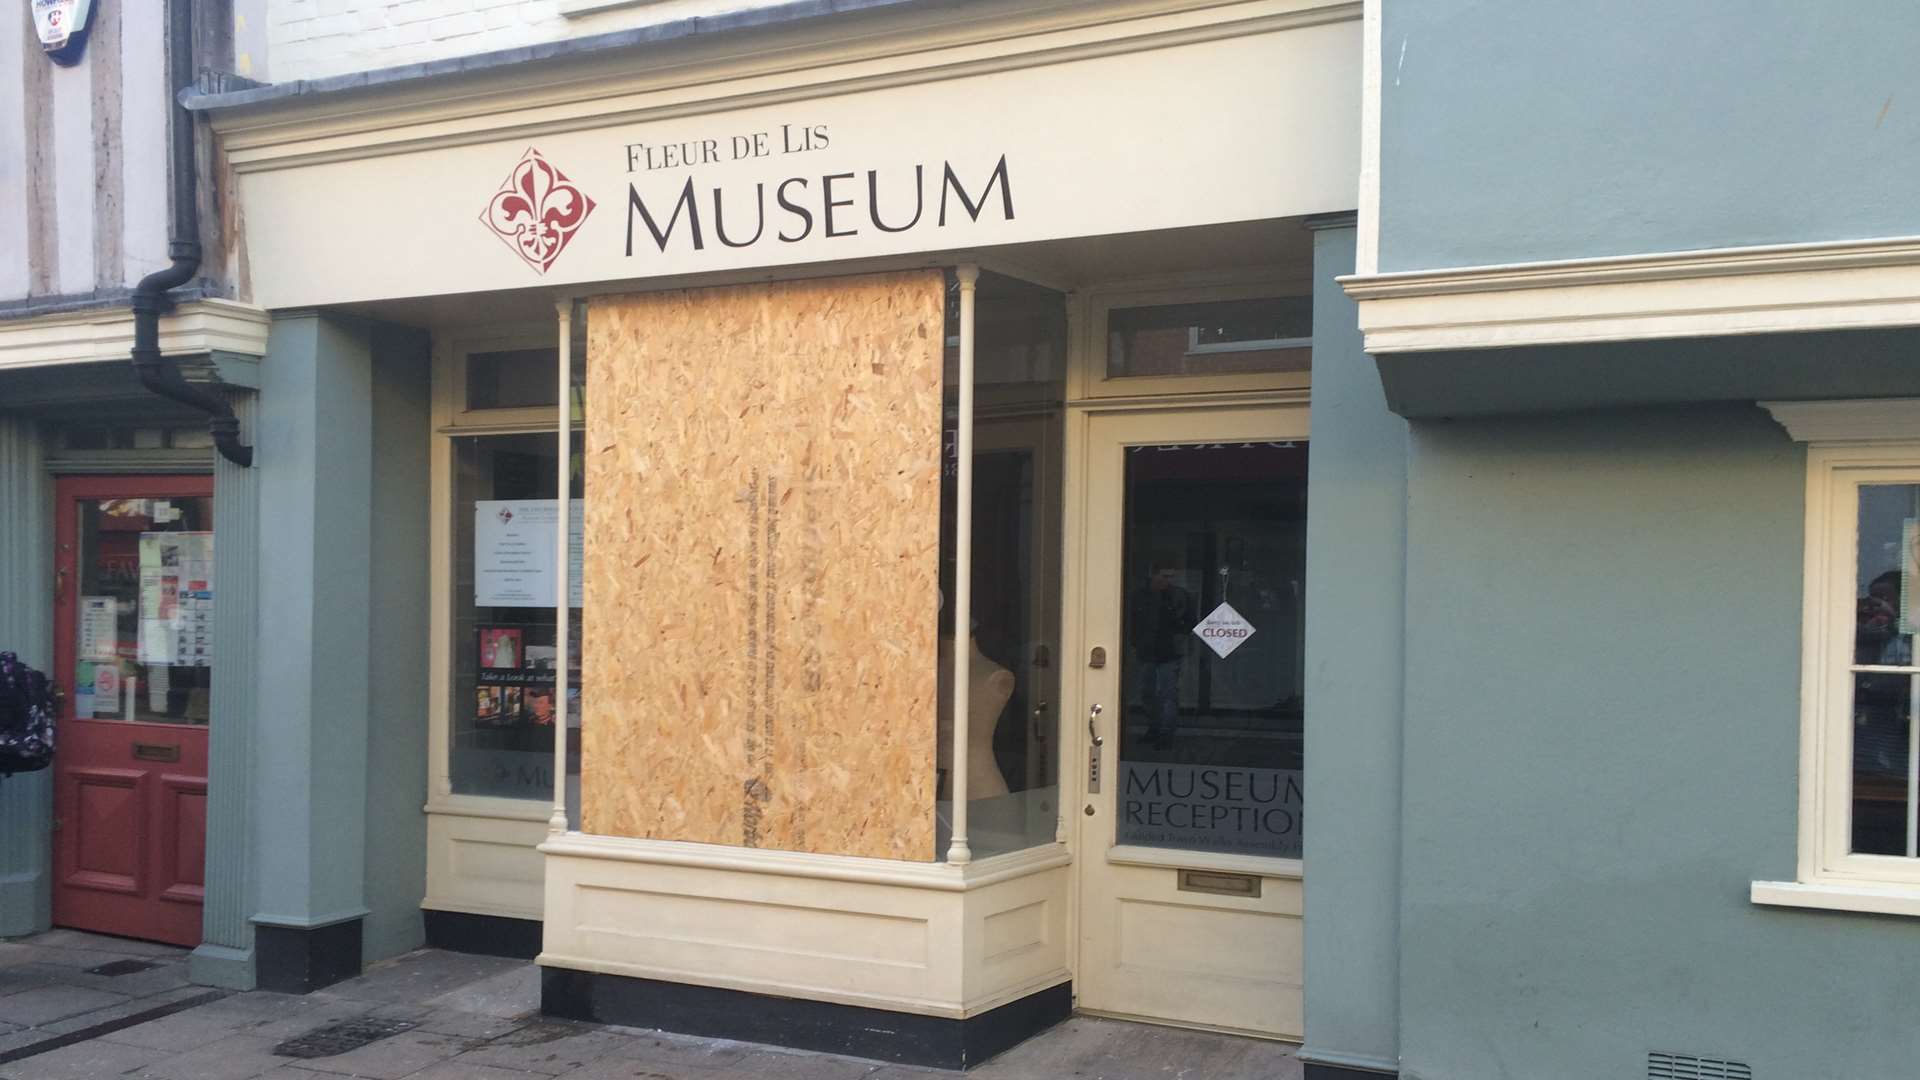 The Fleur de Lis museum had its windows smashed.